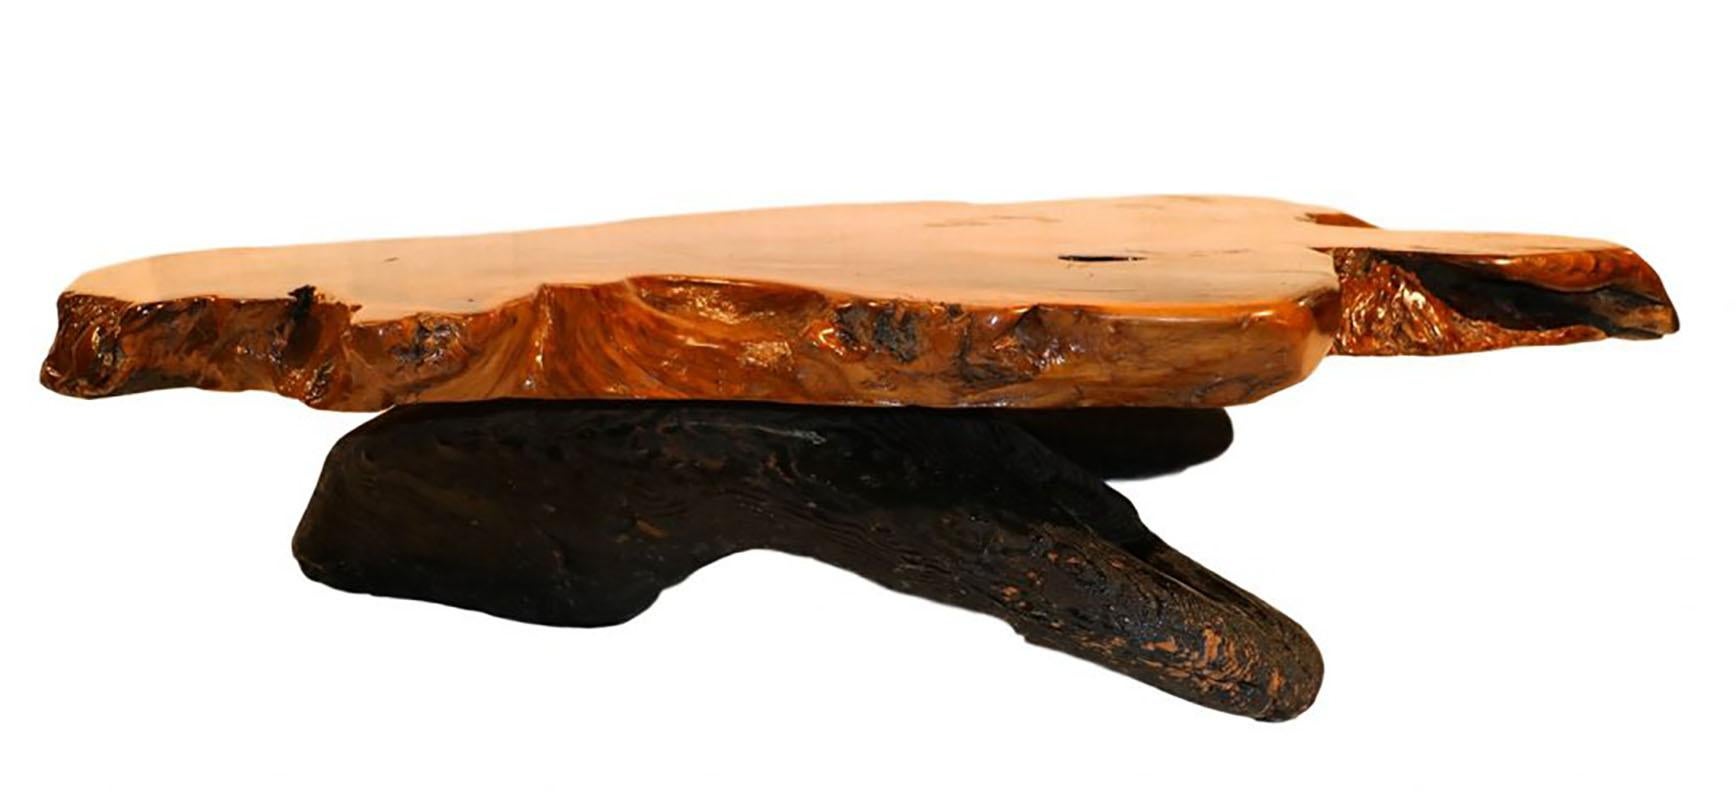 Mid-20th Century Midcentury Live Edge Wood Tree Slab Coffee Table